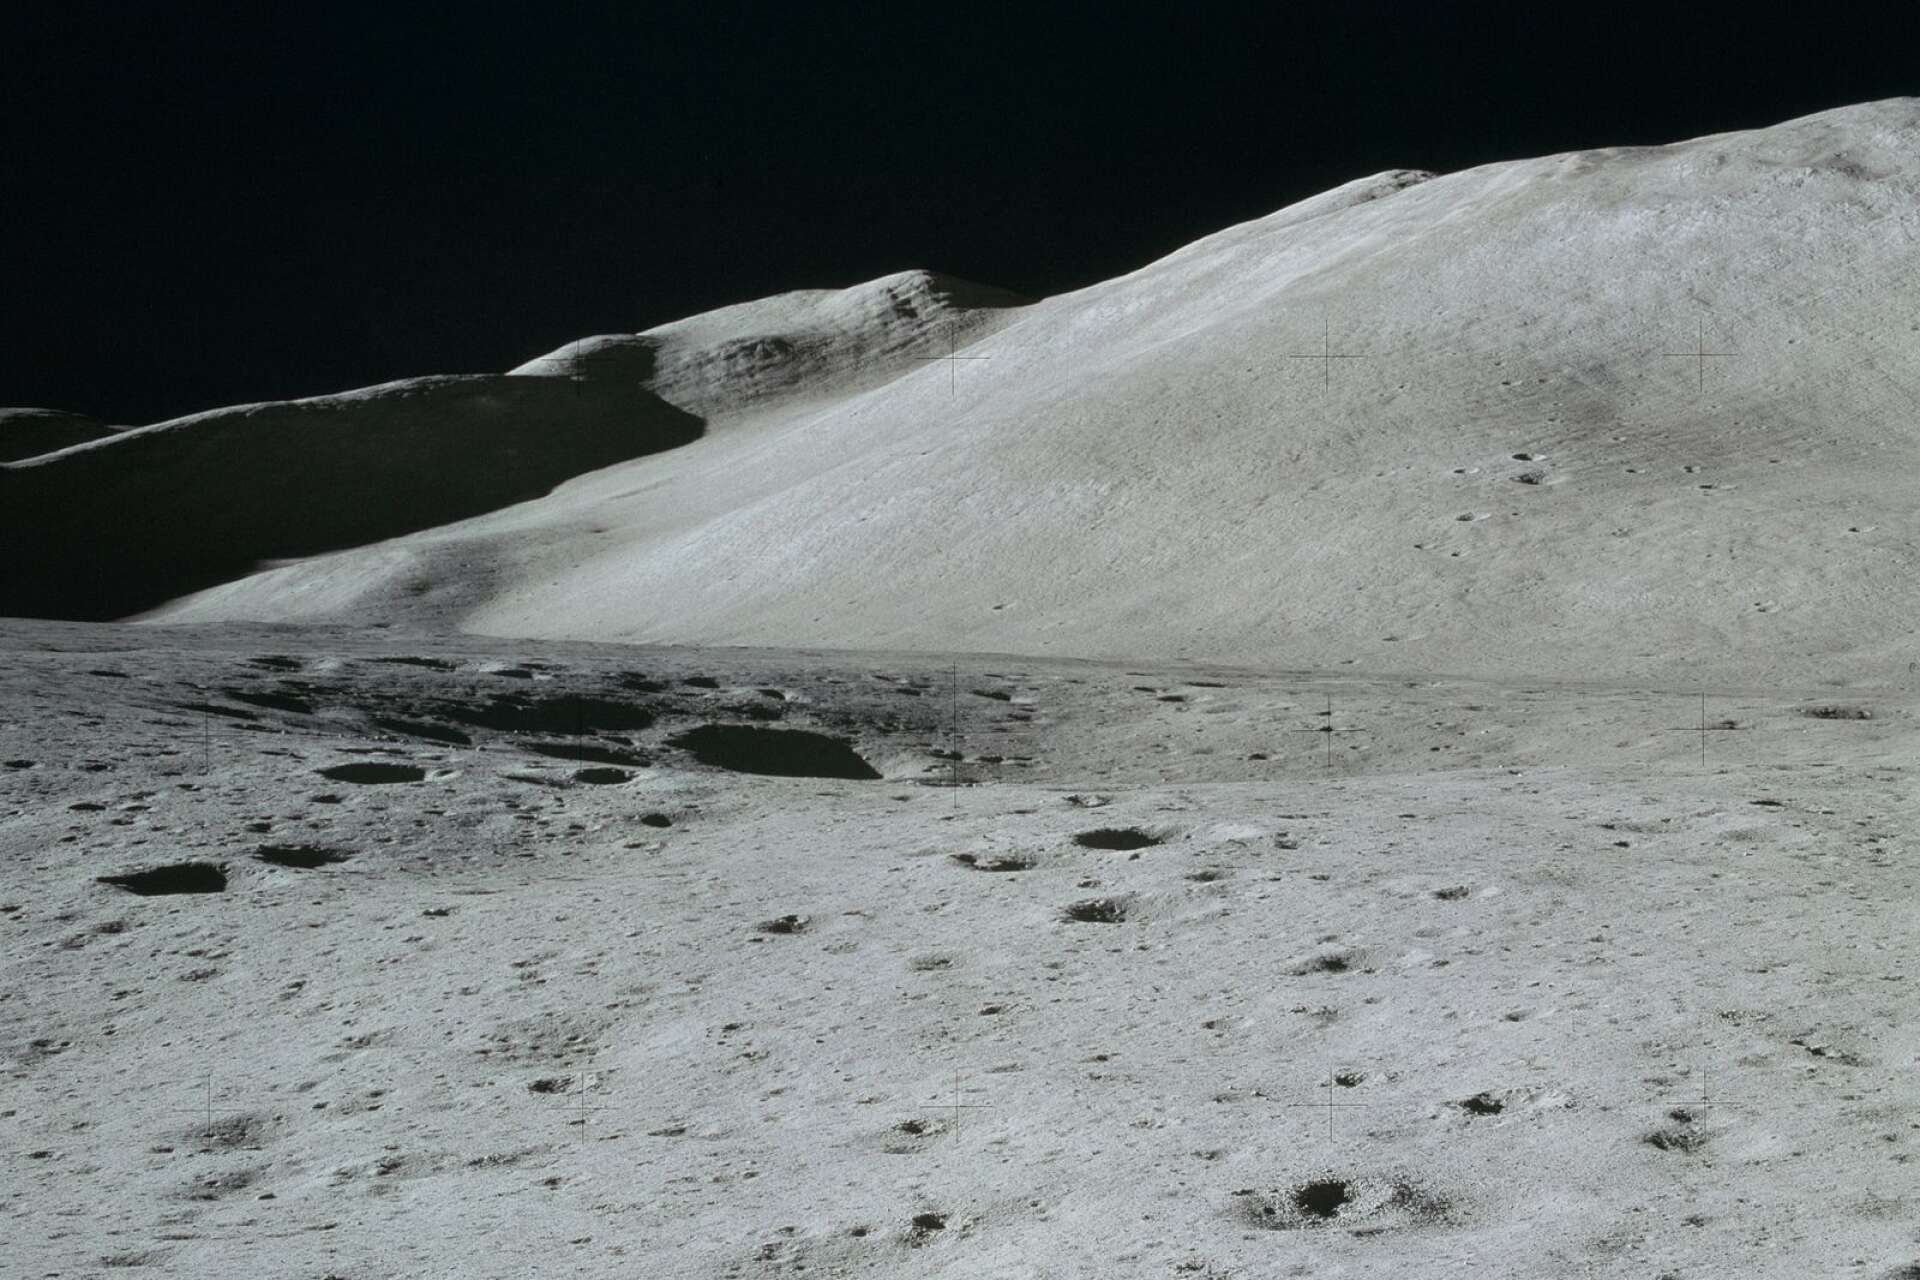 Berget Hadley Delta med Silver Spur sedd från månlandarens tak.